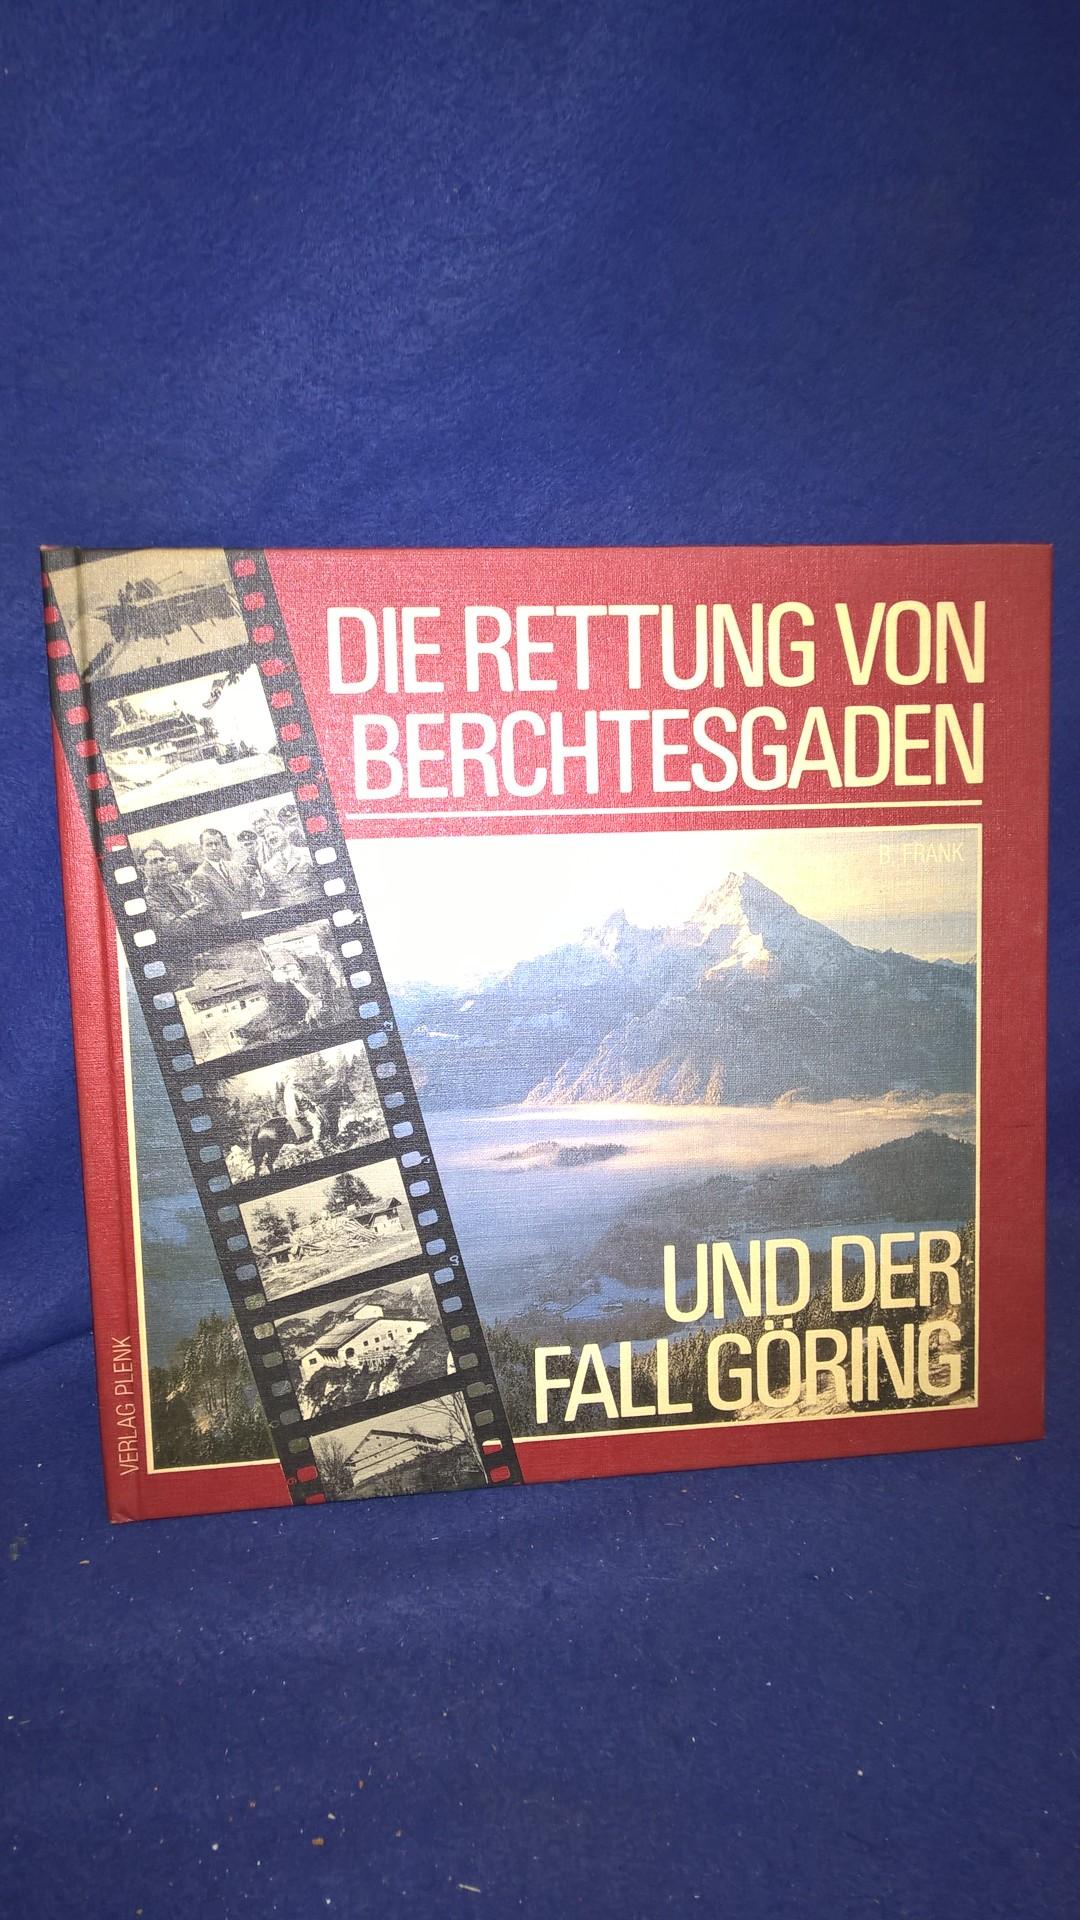 Die Rettung von Berchtesgarden und der Fall Göring.